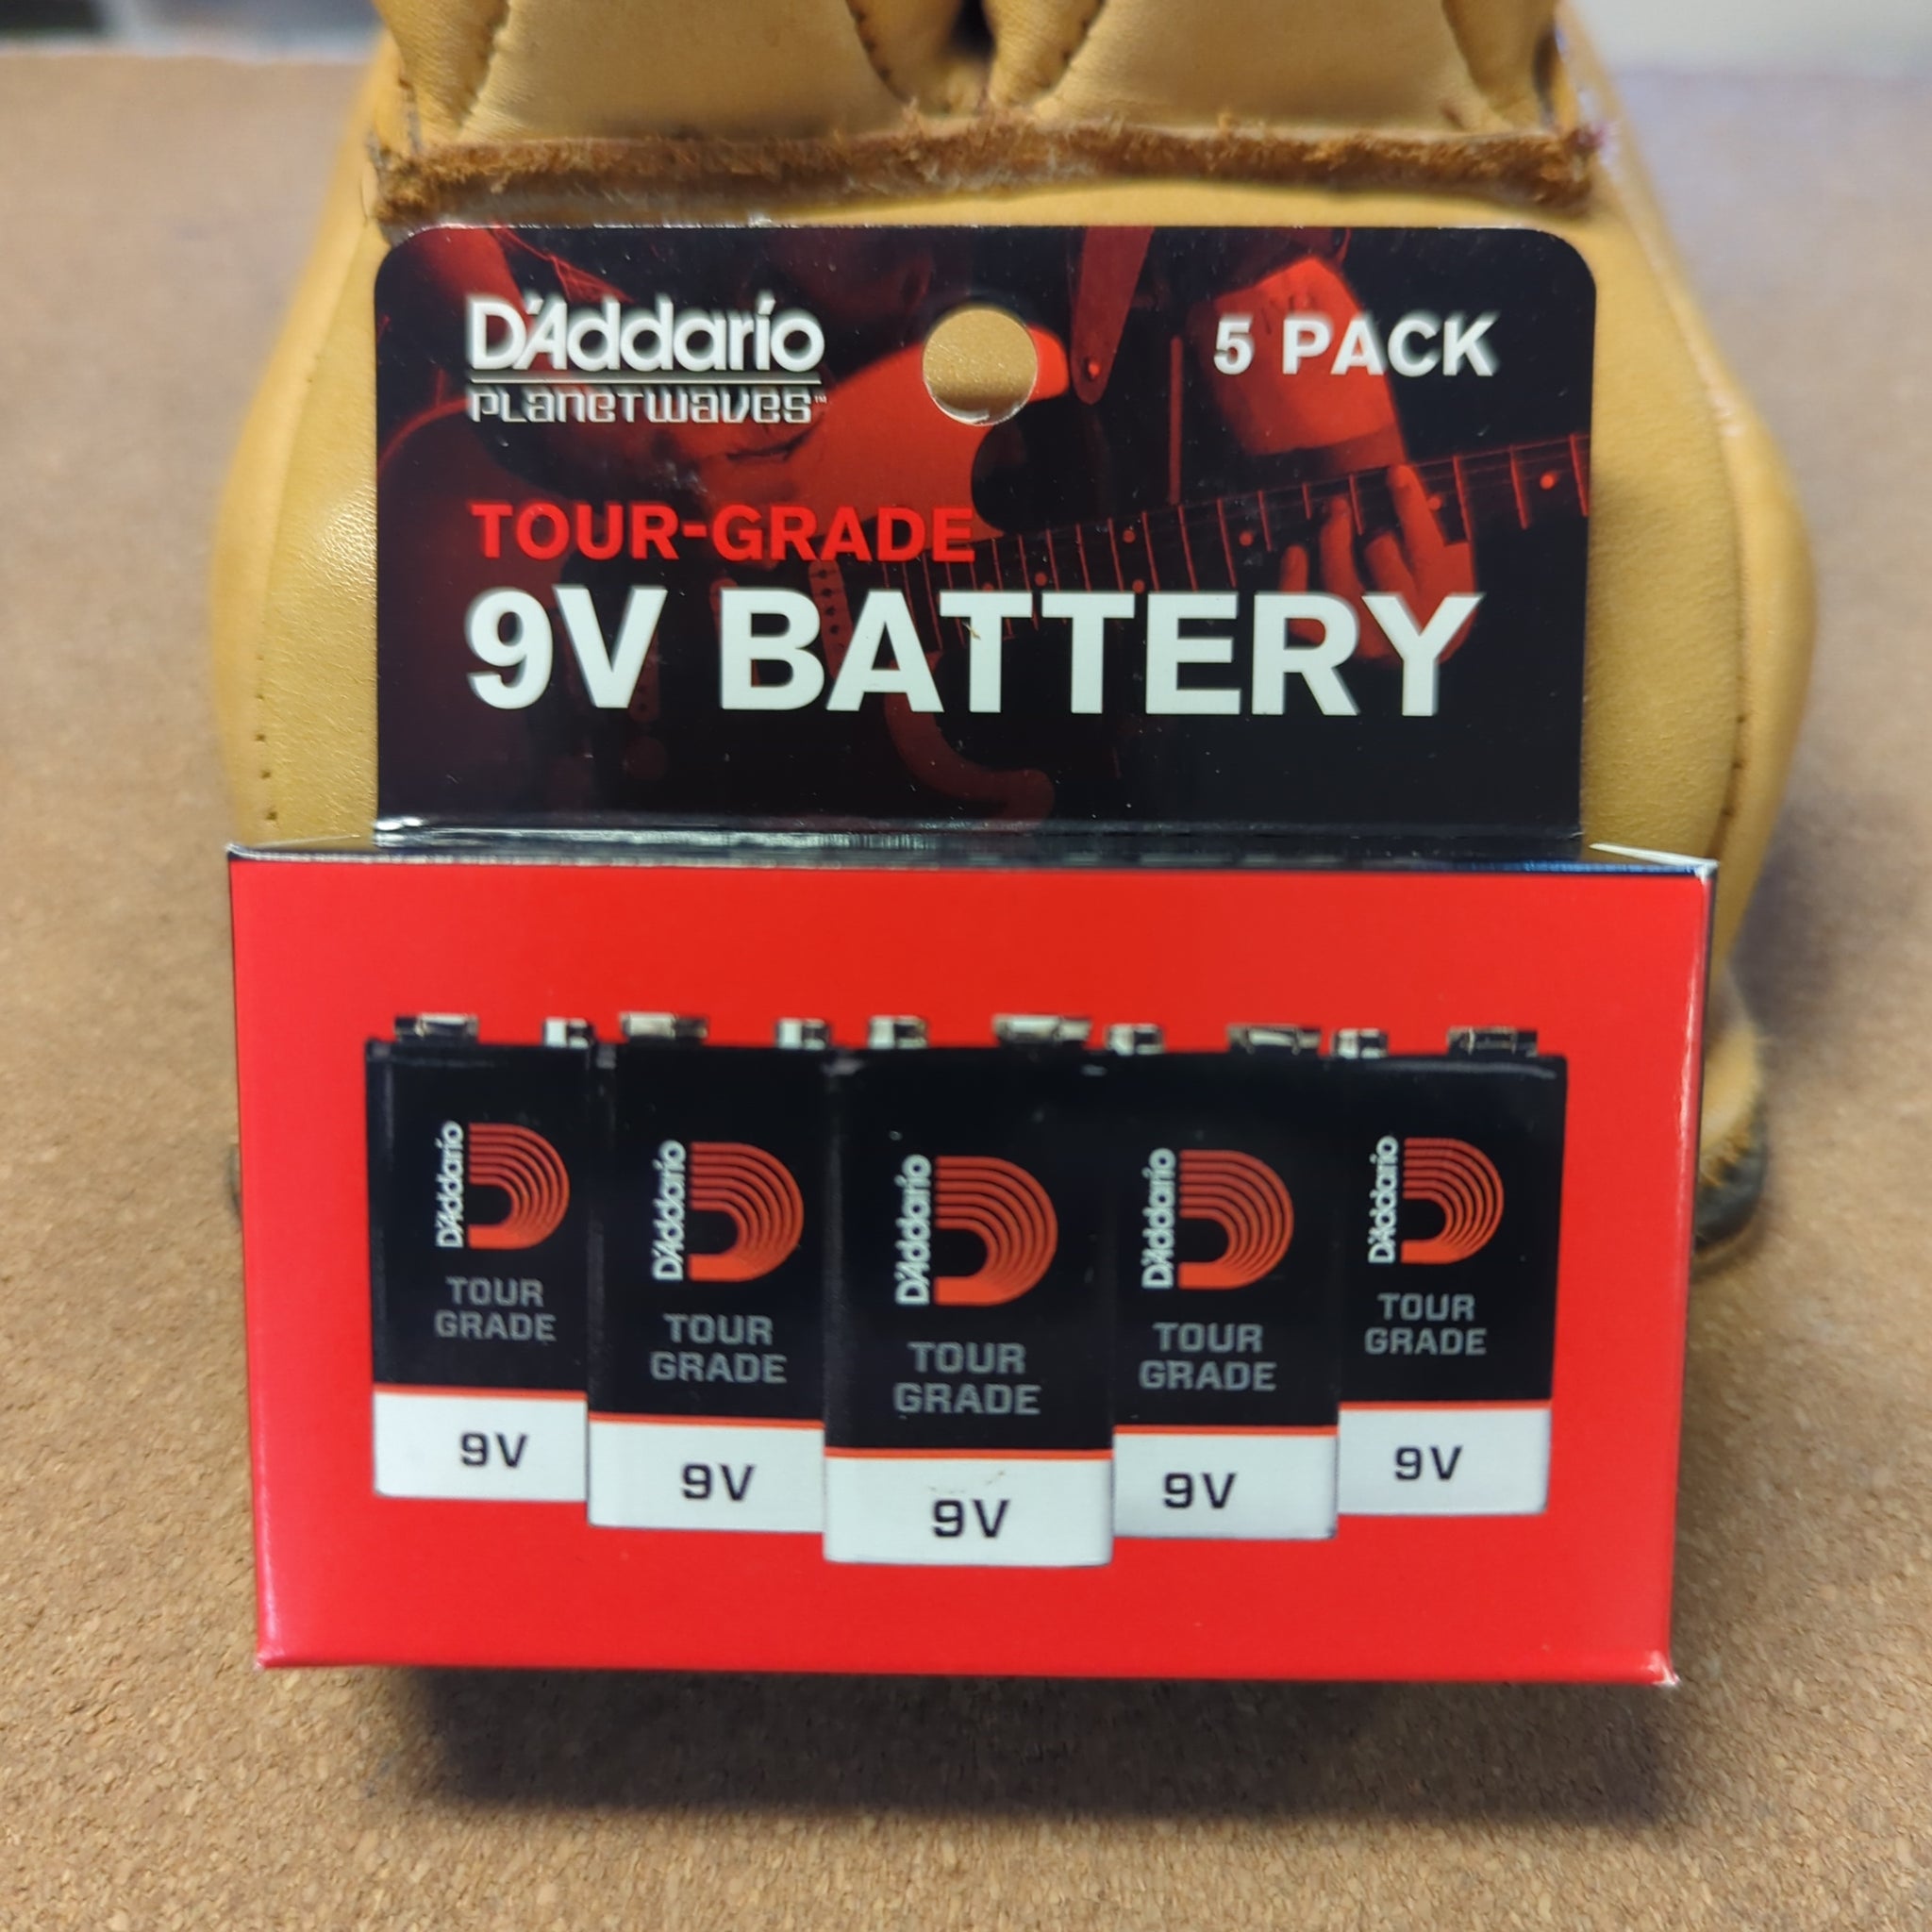 D'Addario 9volt battery